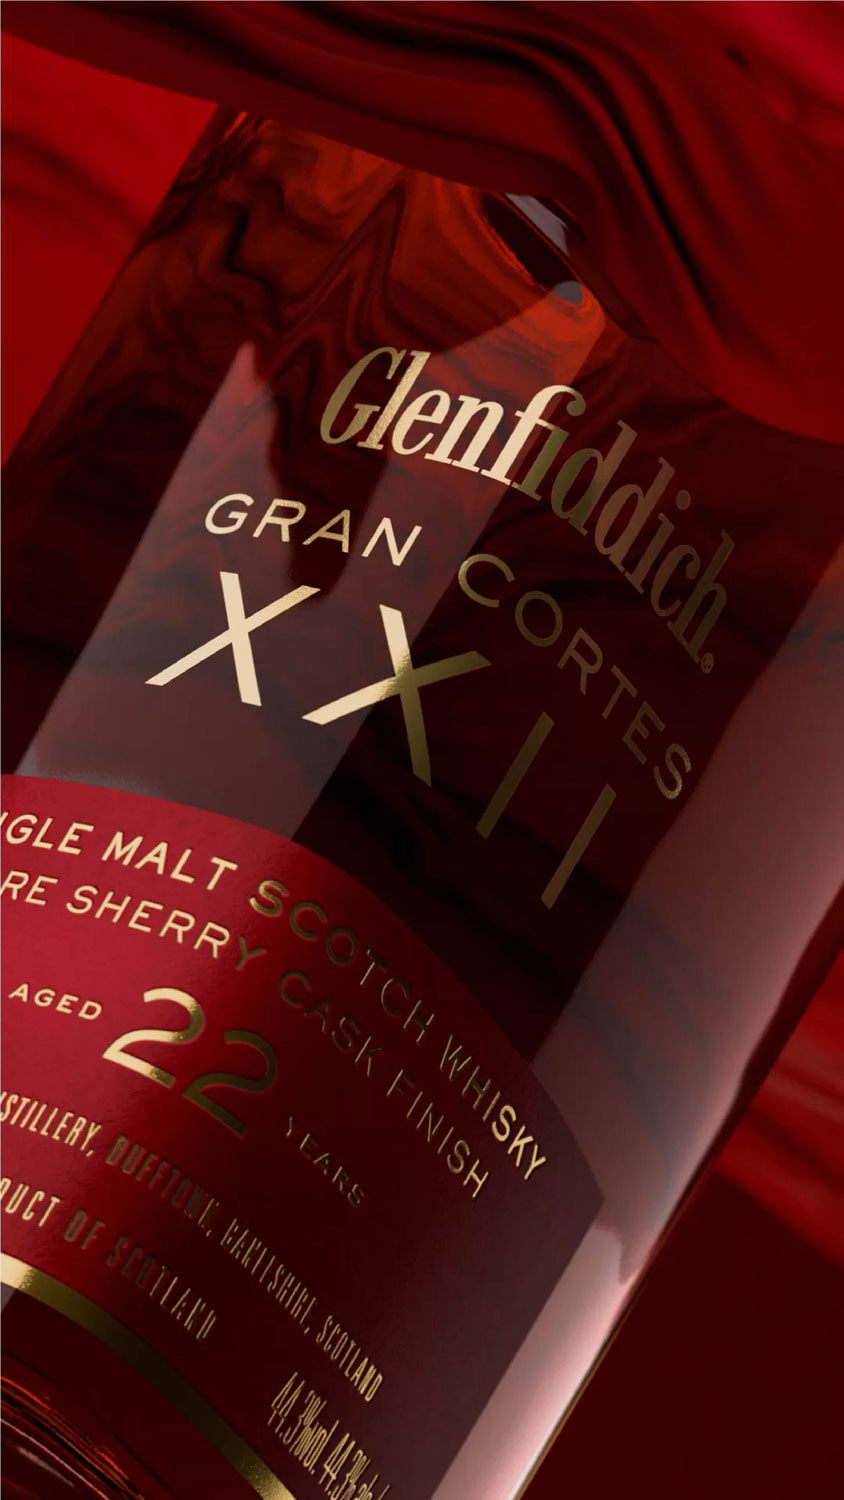 Glenfiddich Gran Cortes bottle